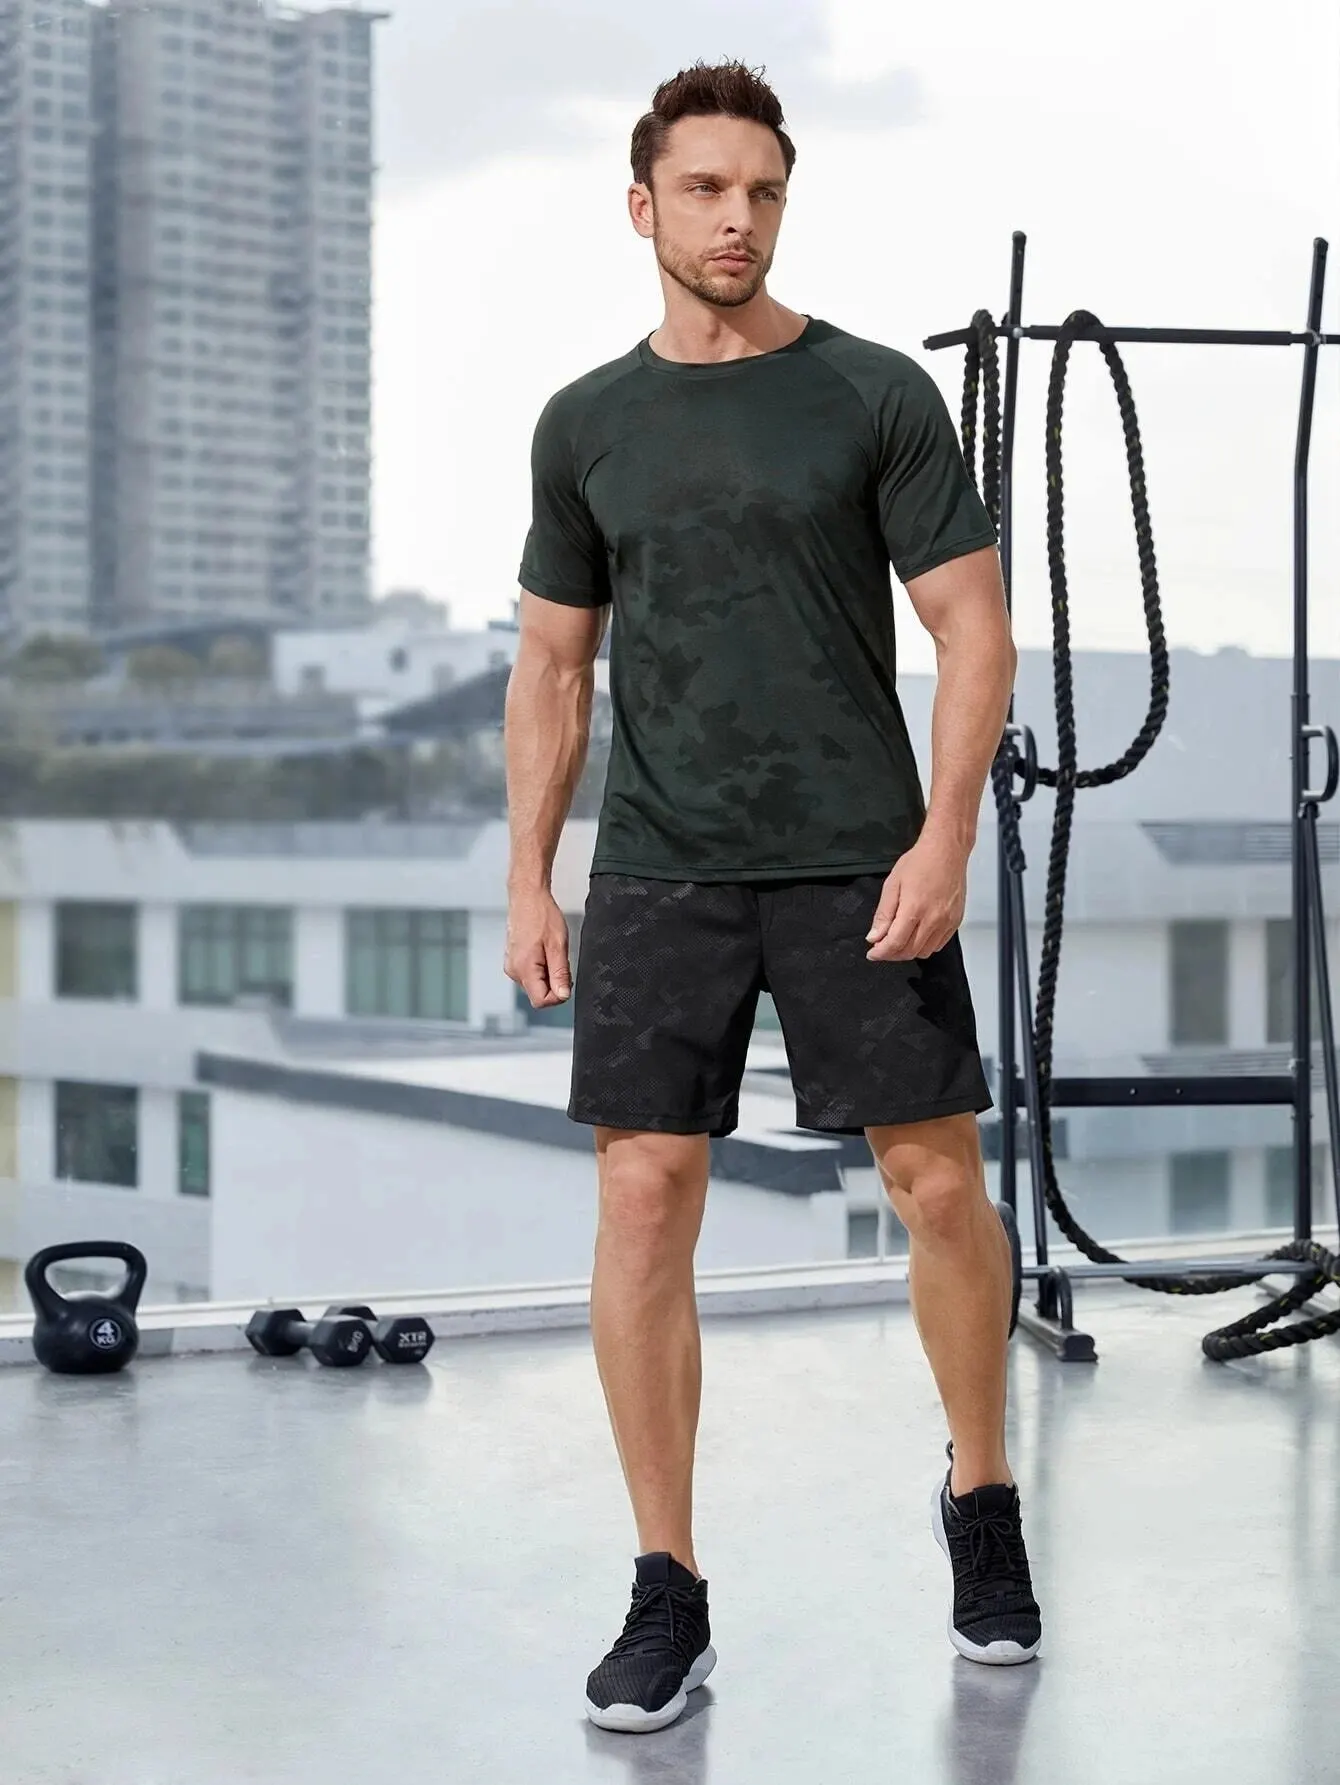 Sneldrogende ademende shorts, heren trekstring High Stretch Sportsshorts voor training in de zomer gymtraining